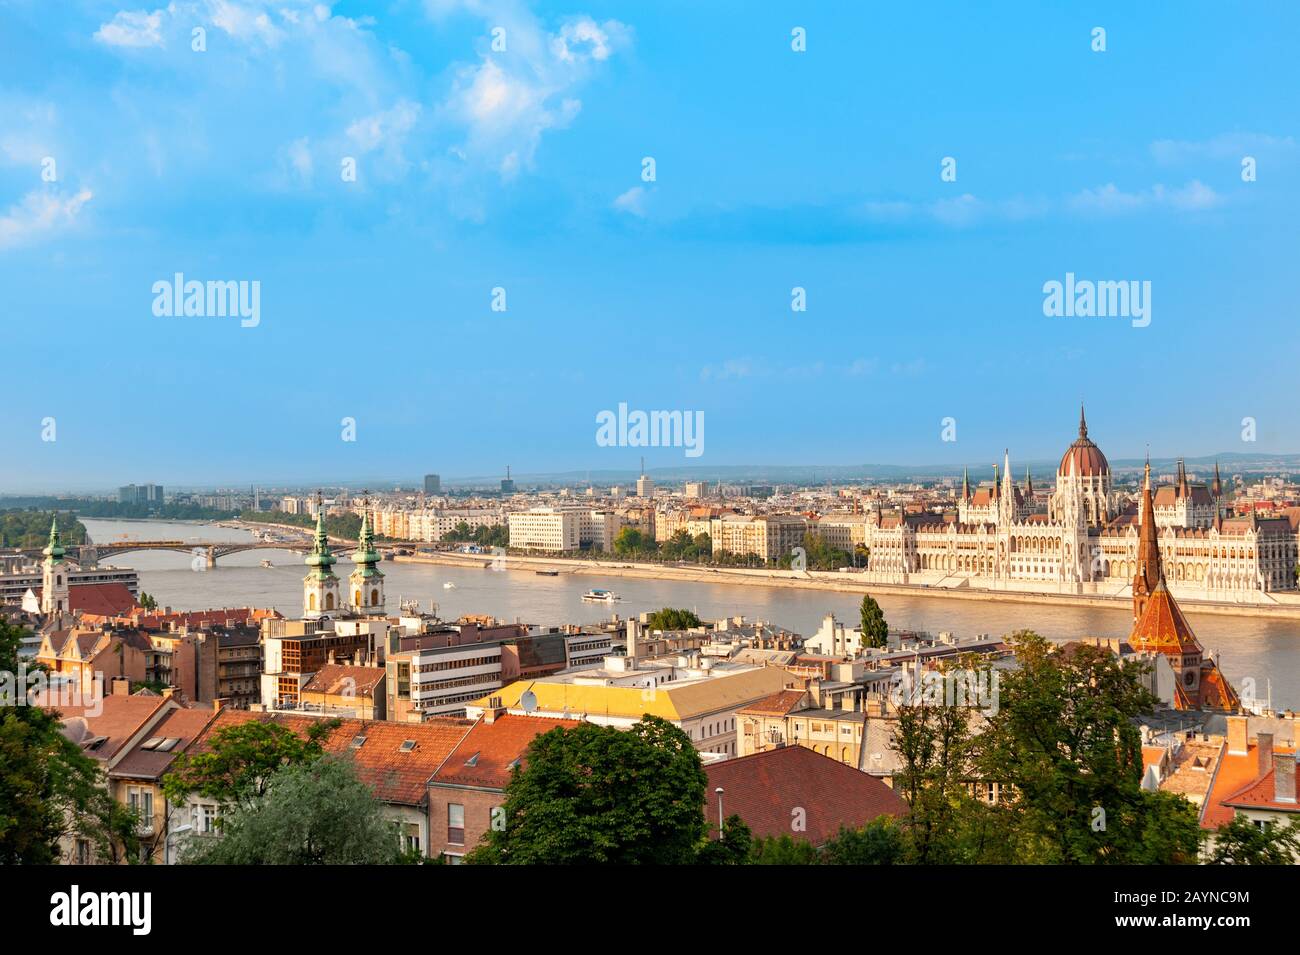 Vue sur le Danube et le Parlement hongrois, Budapest, Hongrie Banque D'Images